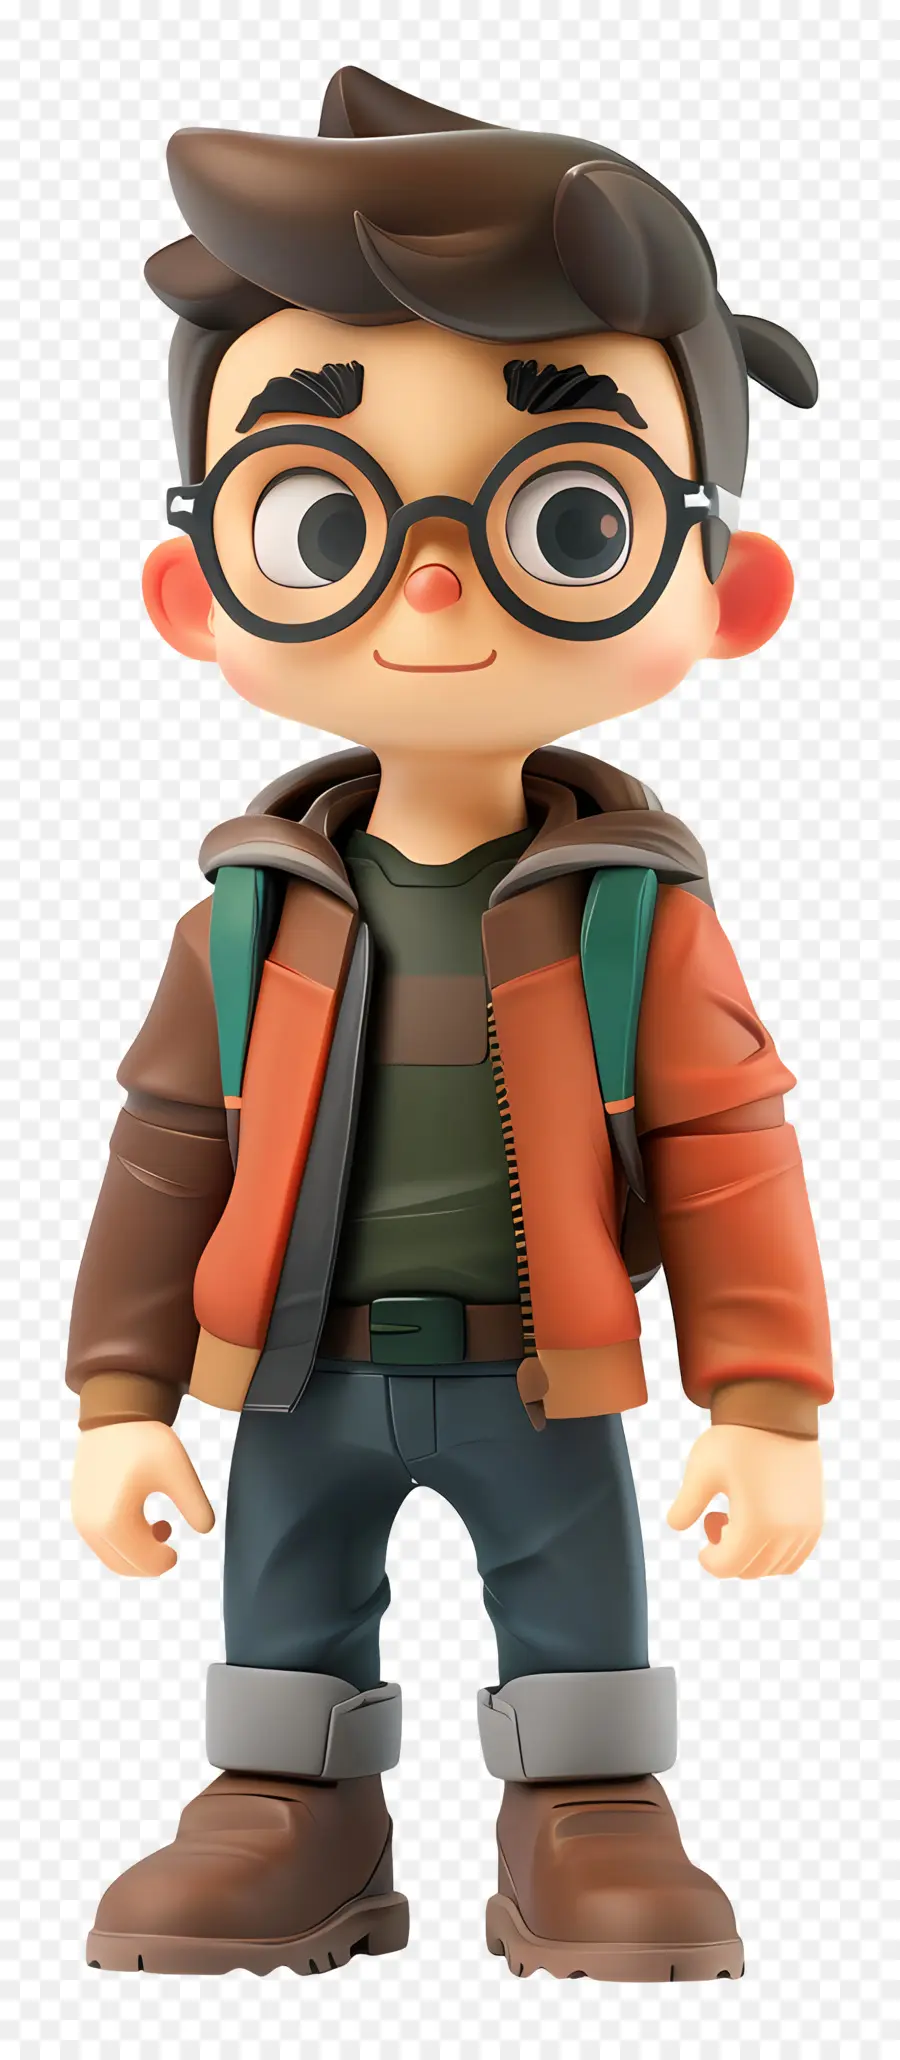 Brille - Junger Mann mit Brille und Jacke posiert